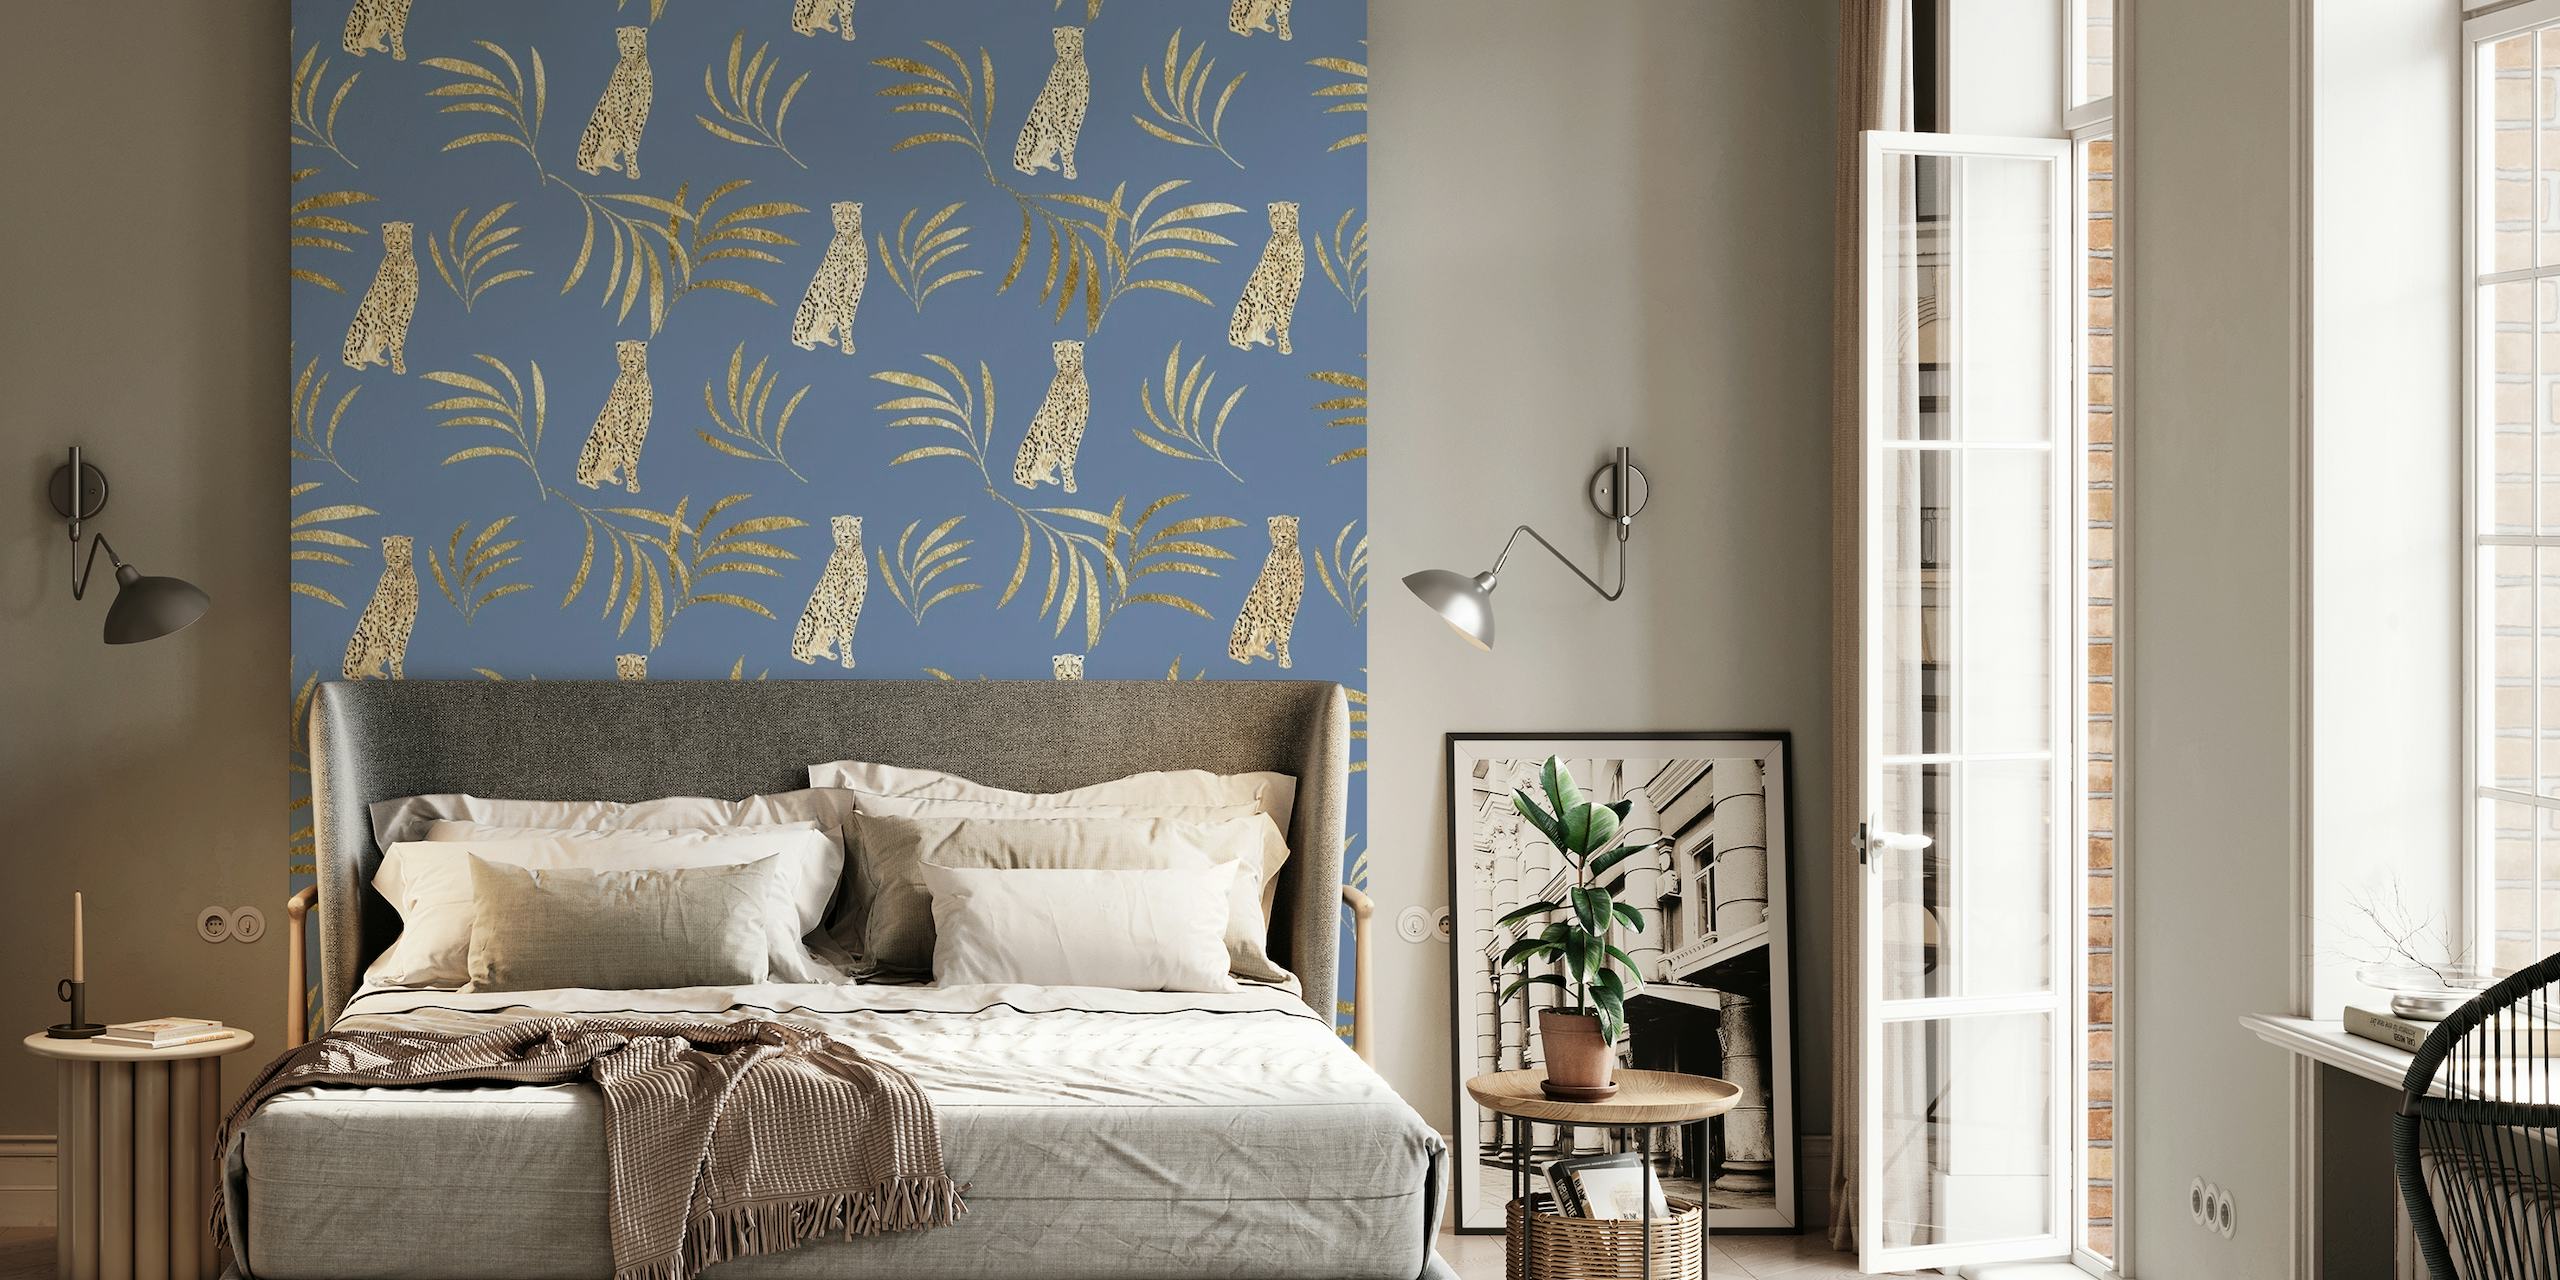 Gepard og eukalyptusblade vægmaleri i nuancer af guld og grøn på en dyb blå baggrund